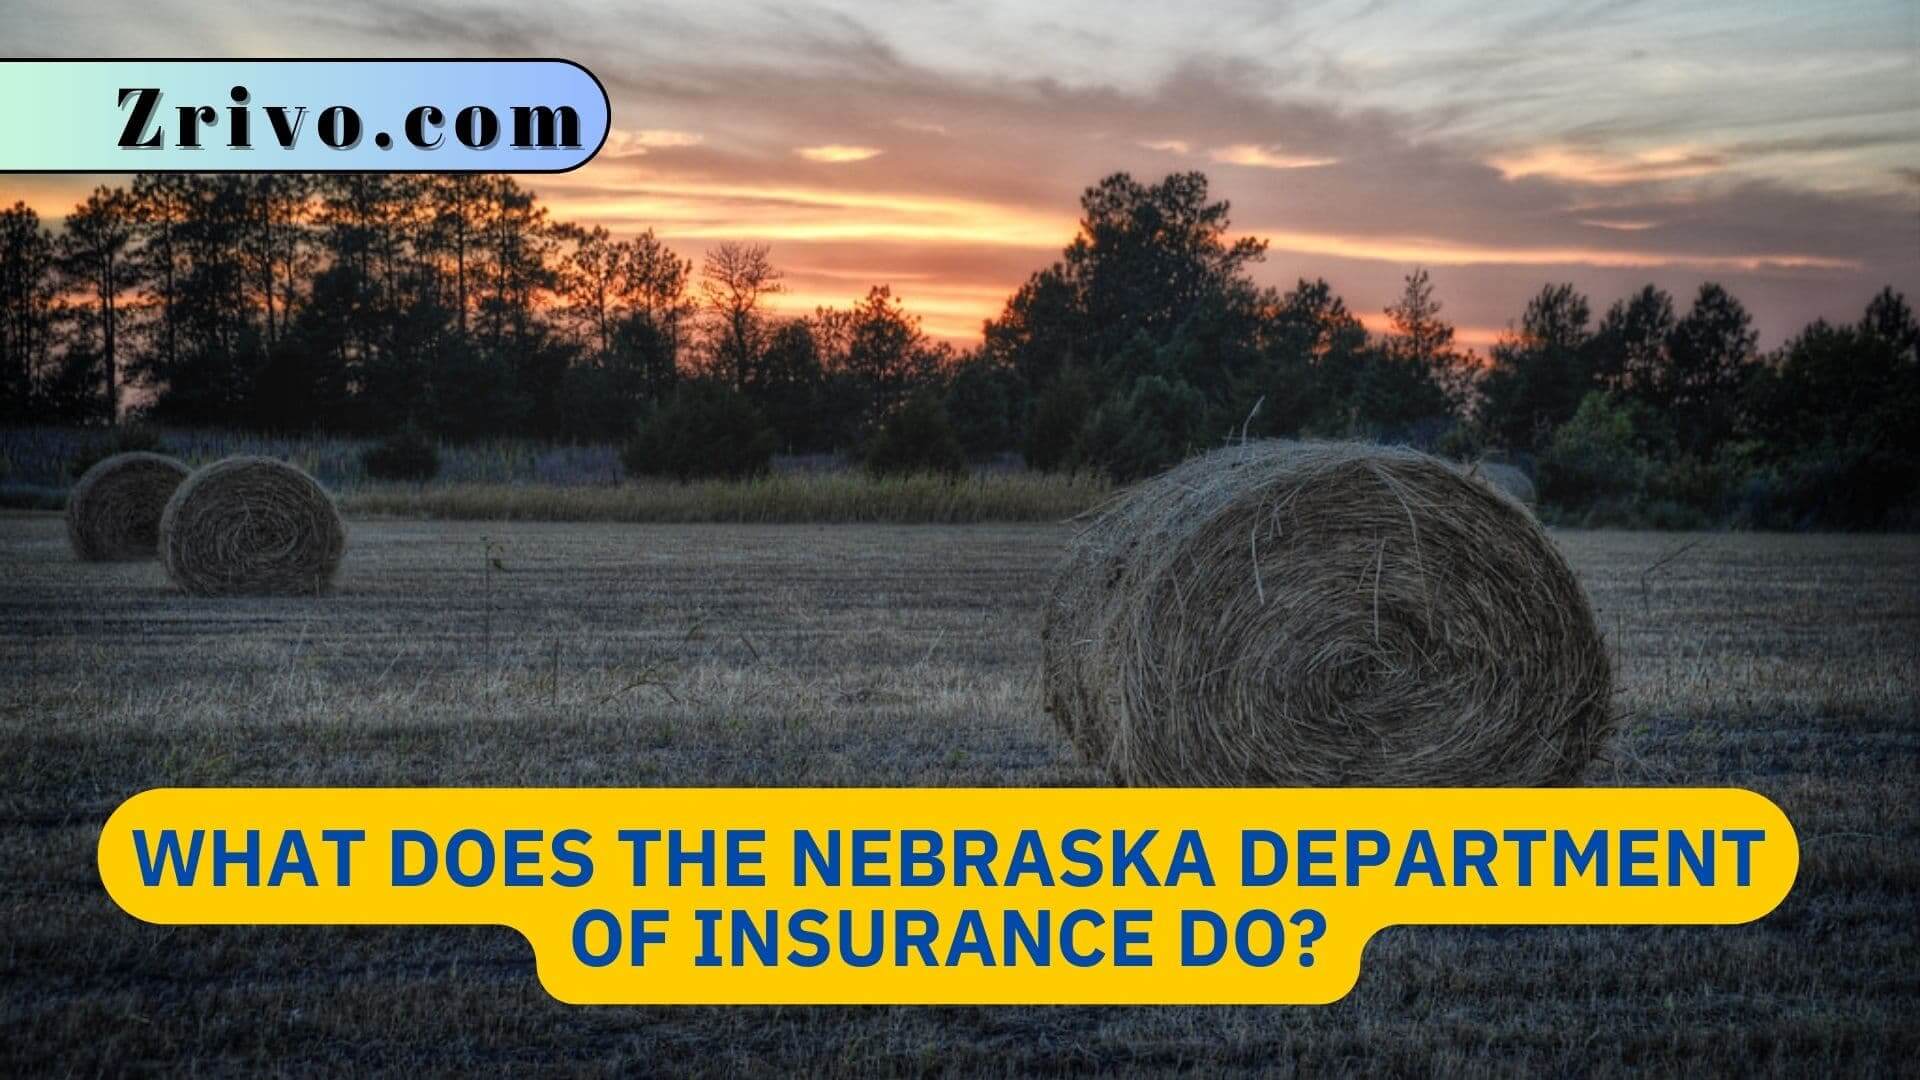 What Does the Nebraska Department of Insurance Do